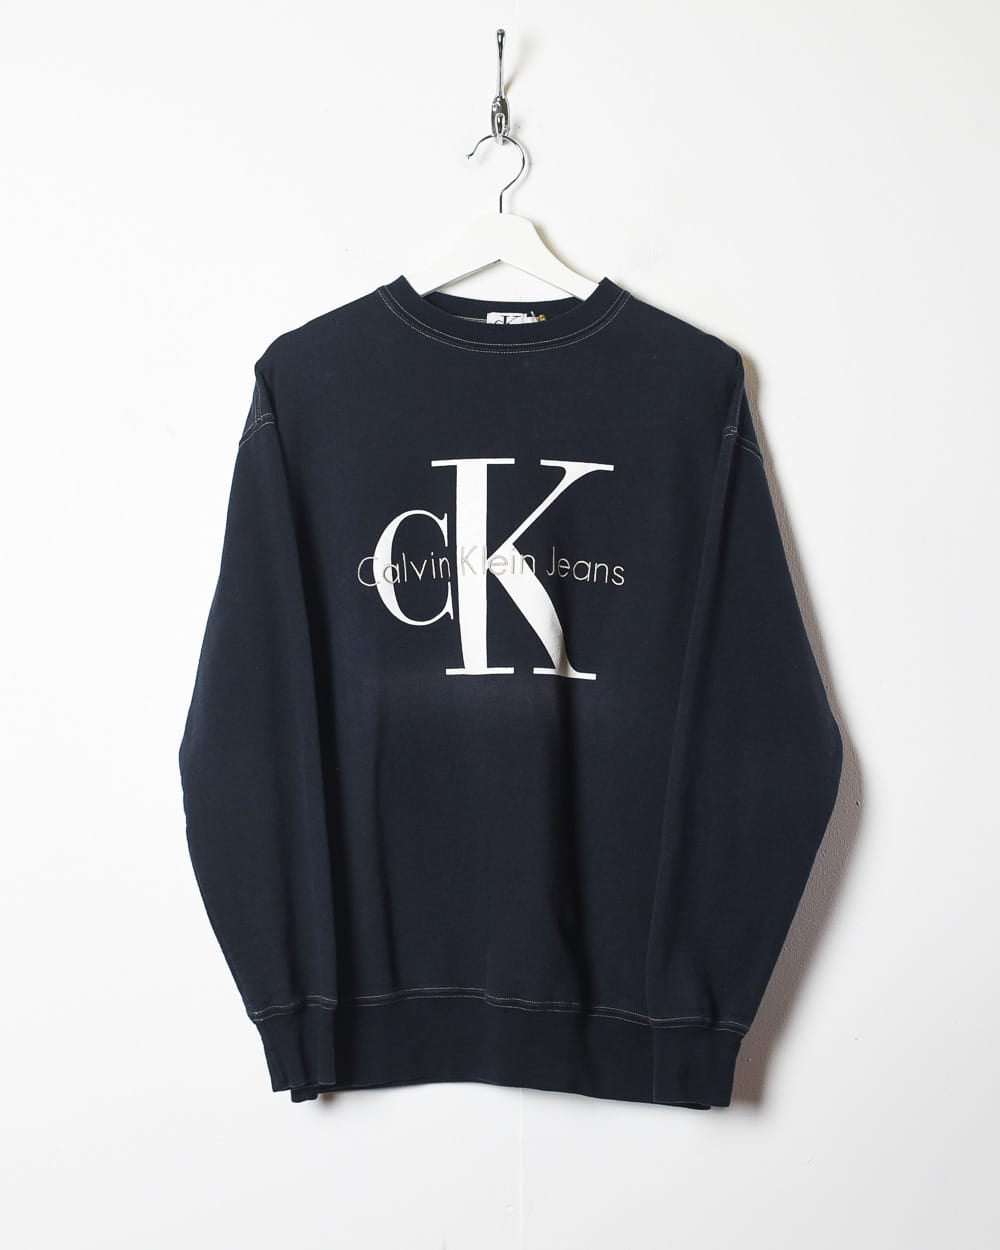 Black Calvin Klein Jeans Sweatshirt - Medium